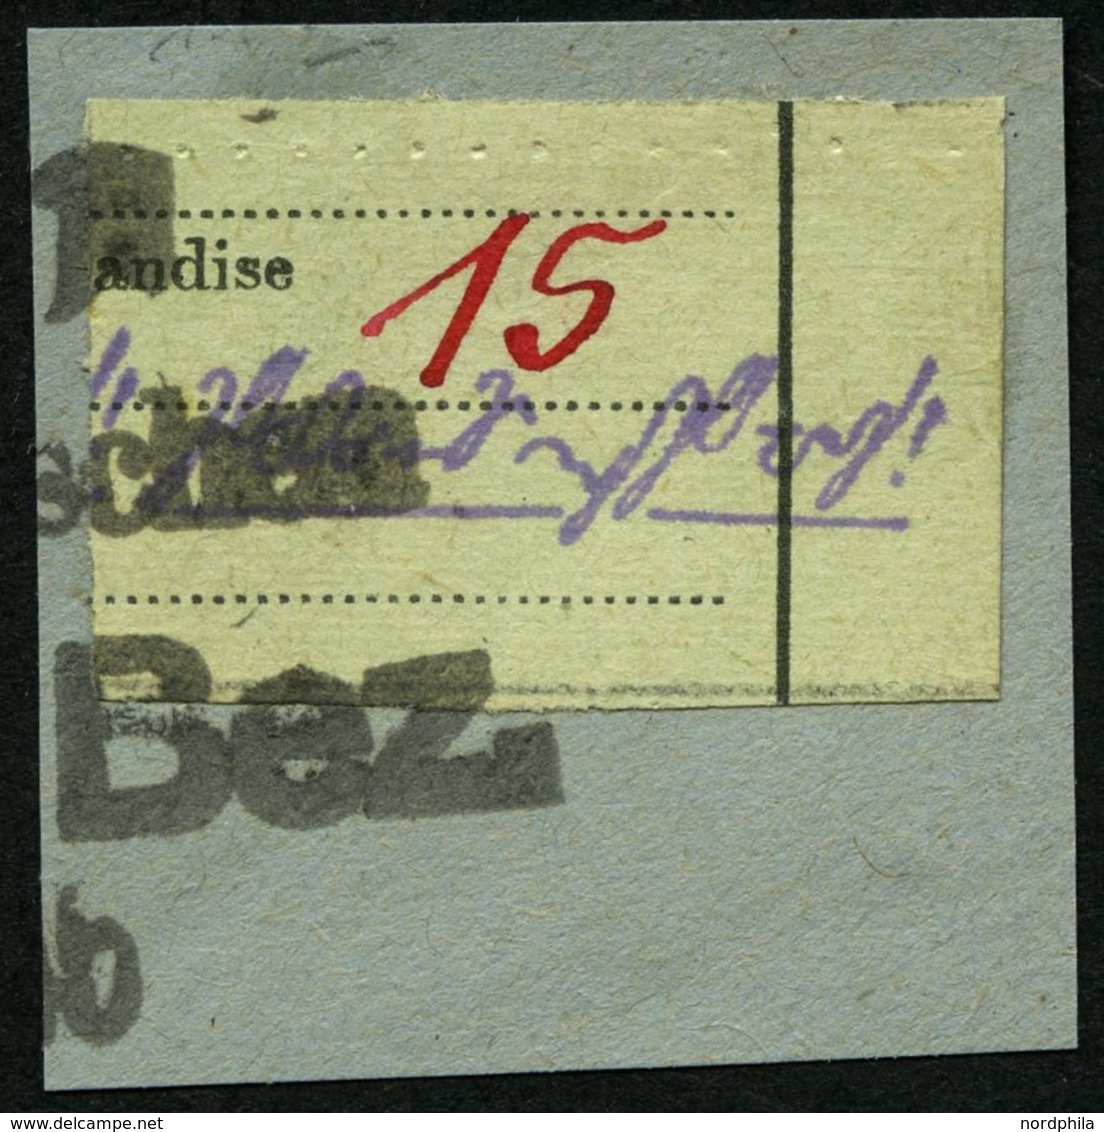 GROSSRÄSCHEN-VORLÄUFER V 11a BrfStk, 1945, 15 Pf. Zollformular, Nur Eine Wertangabe, Prachtbriefstück, Mi. (400.-) - Private & Local Mails